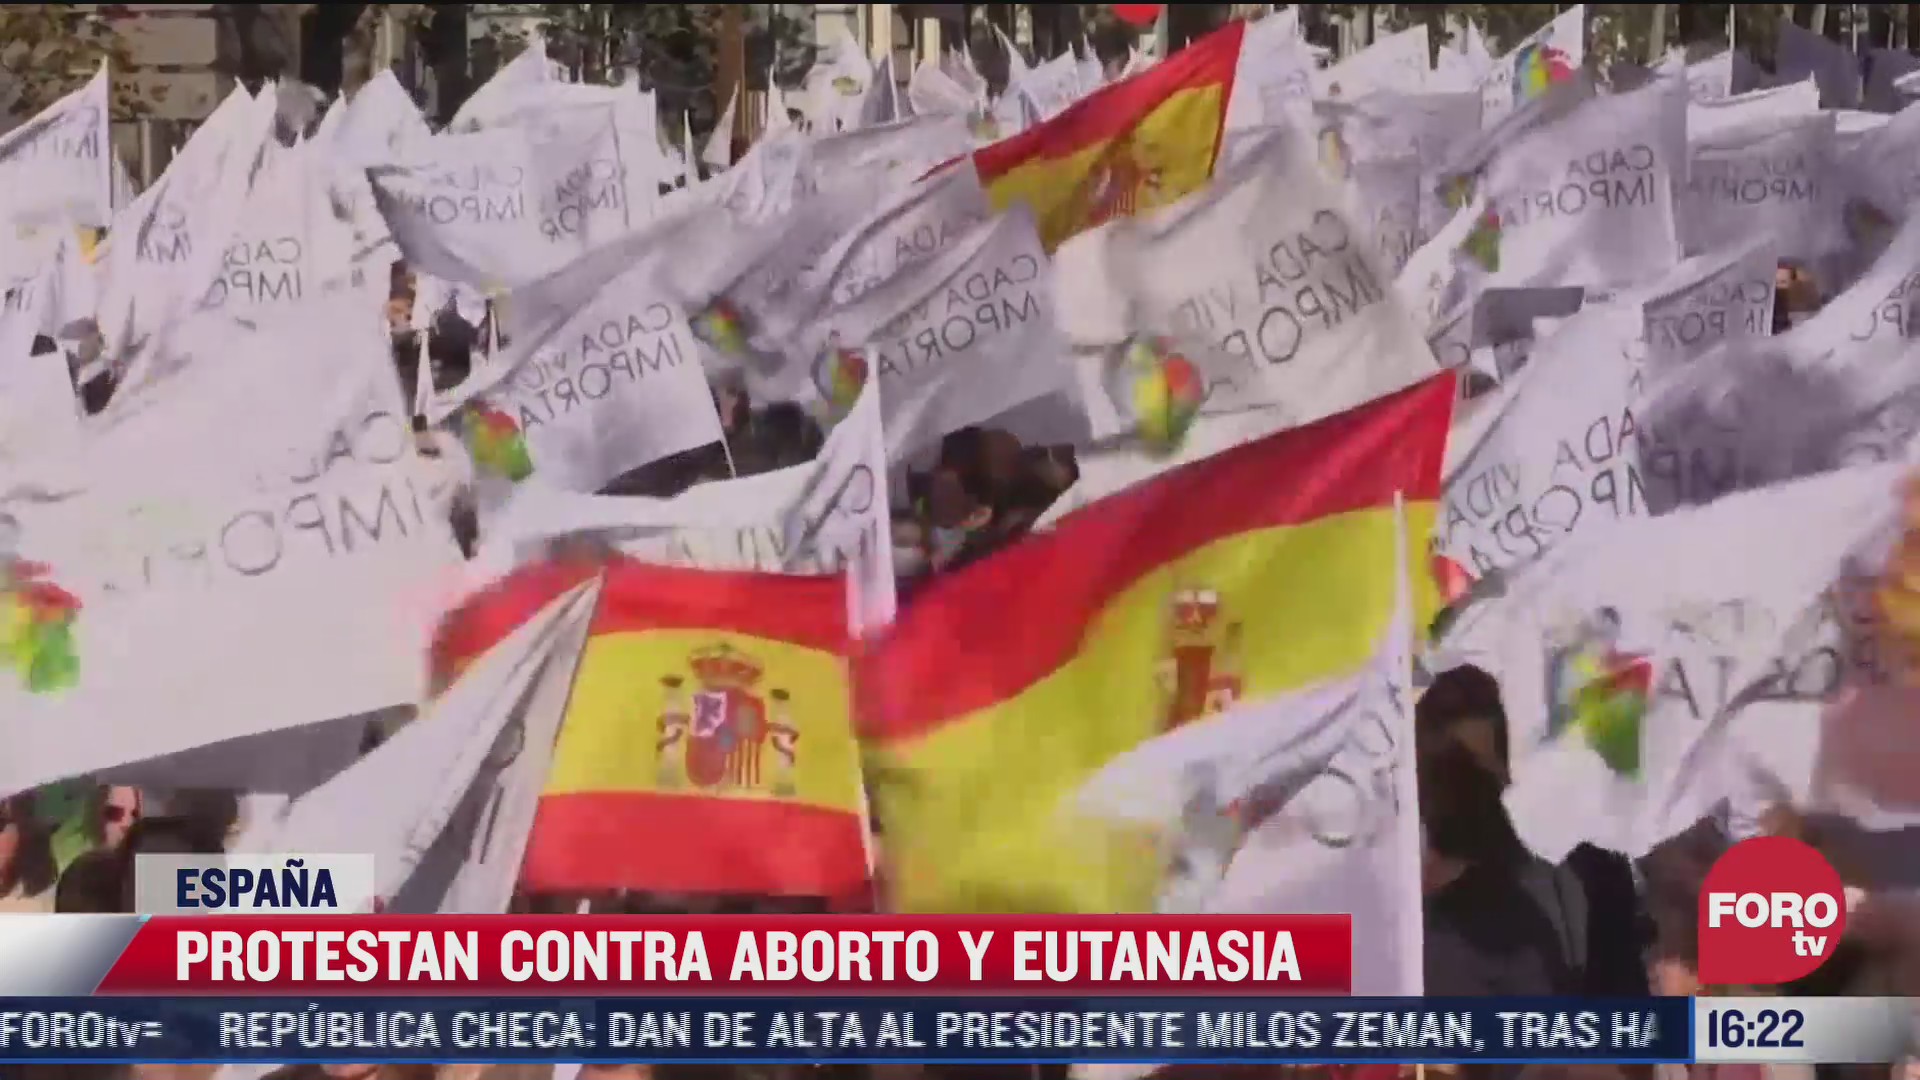 protestan contra aborto y eutanasia en espana